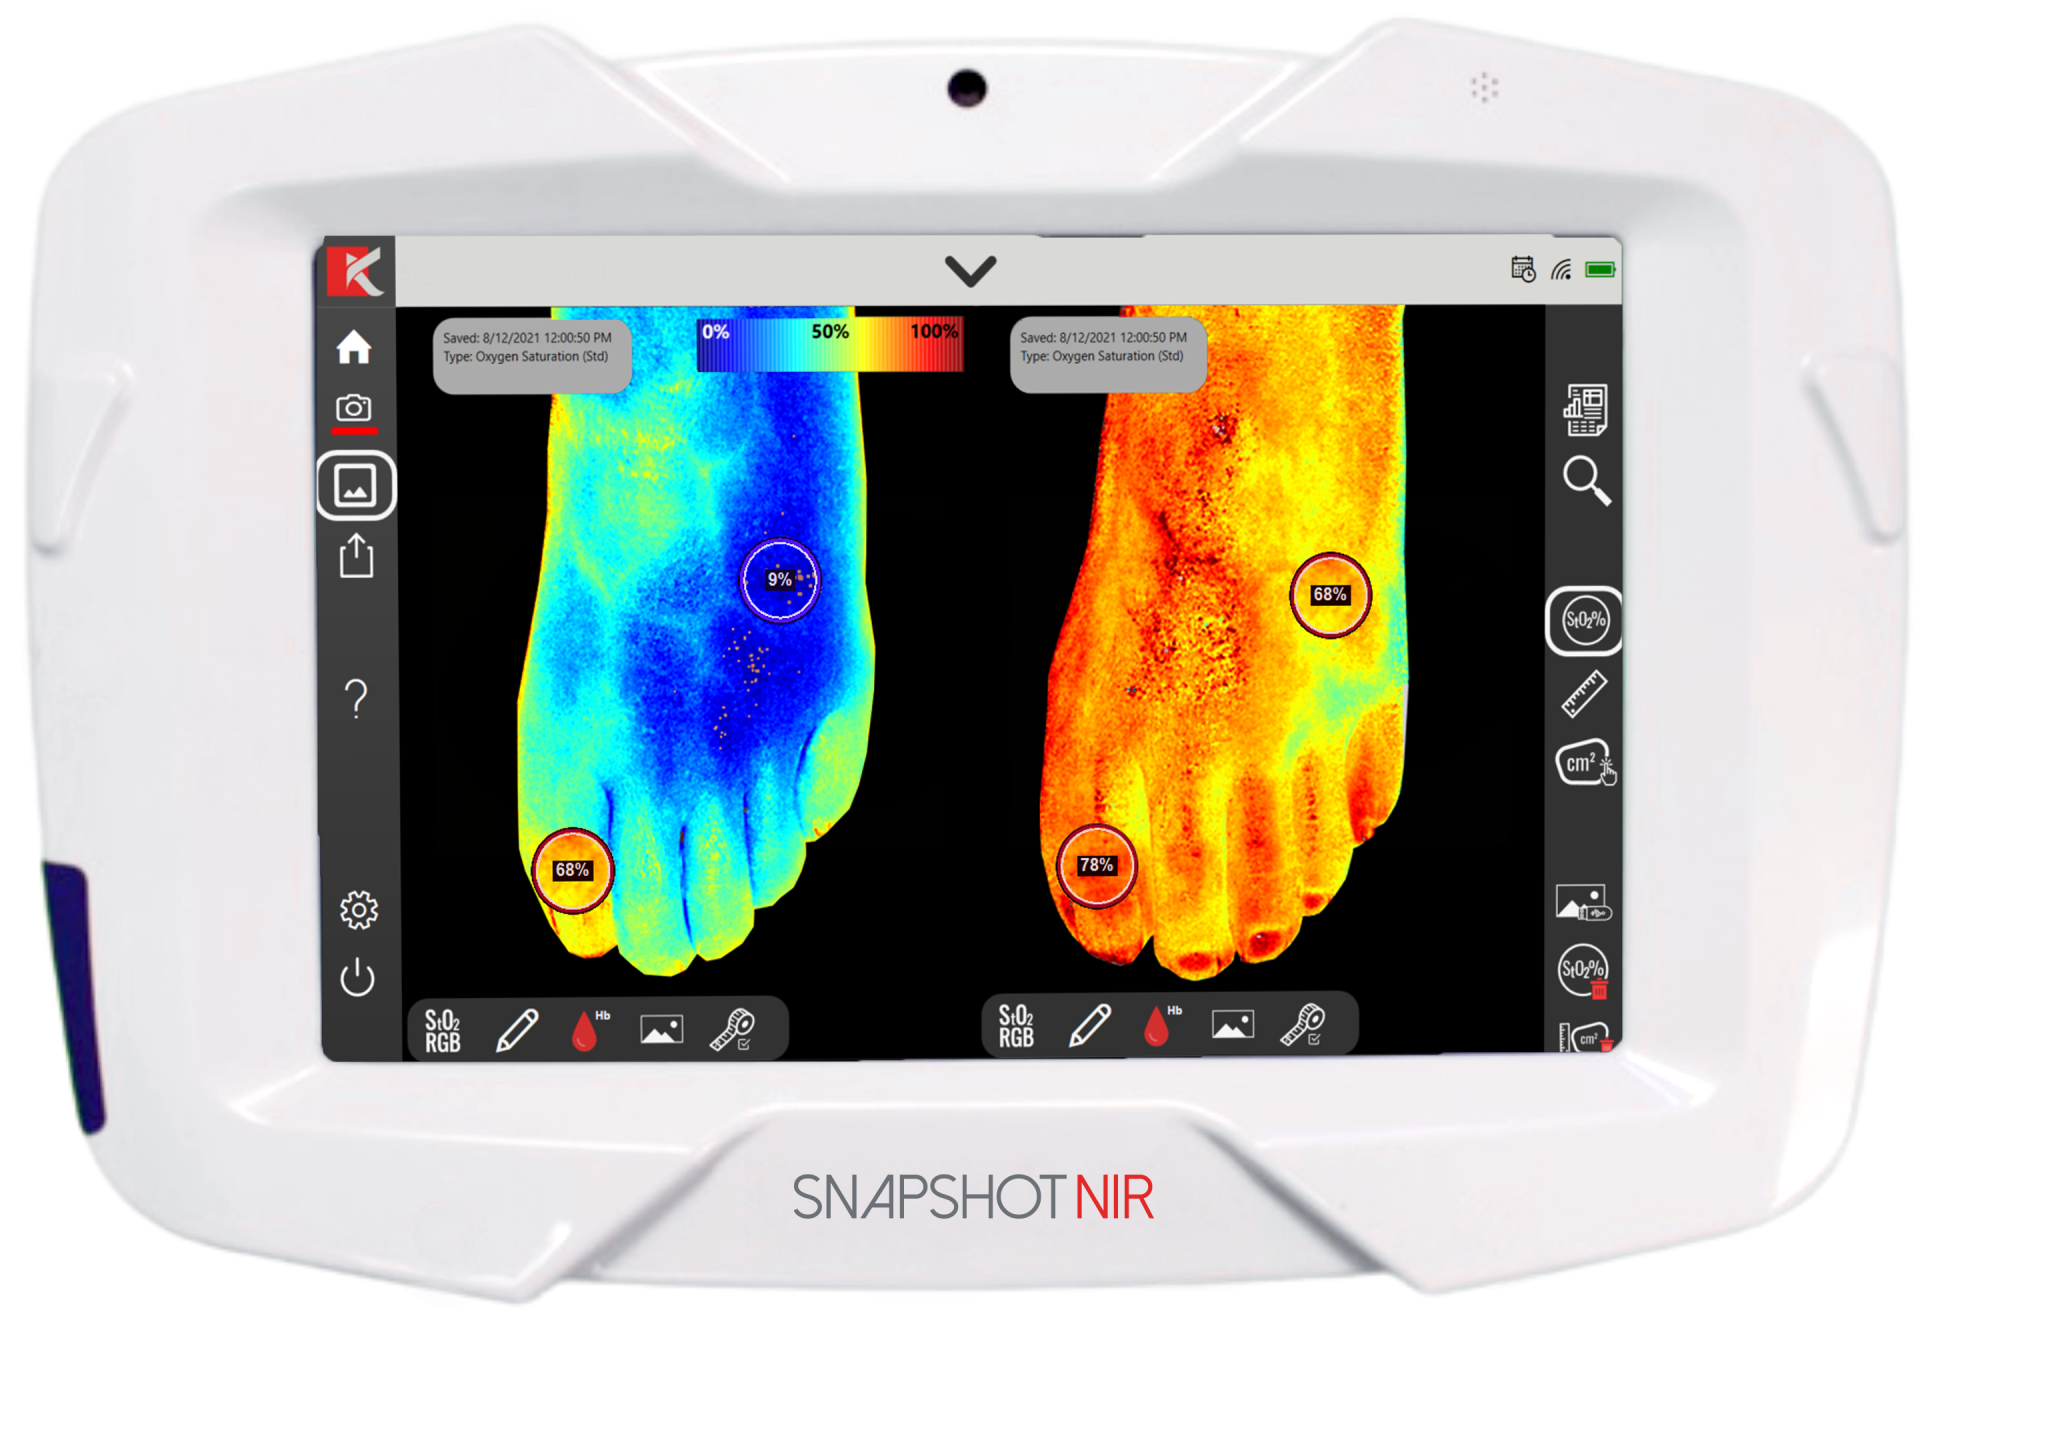 Dispositif de diagnostic portable "Snapshot NIR" pour remplacer l'échographie et la radiographie